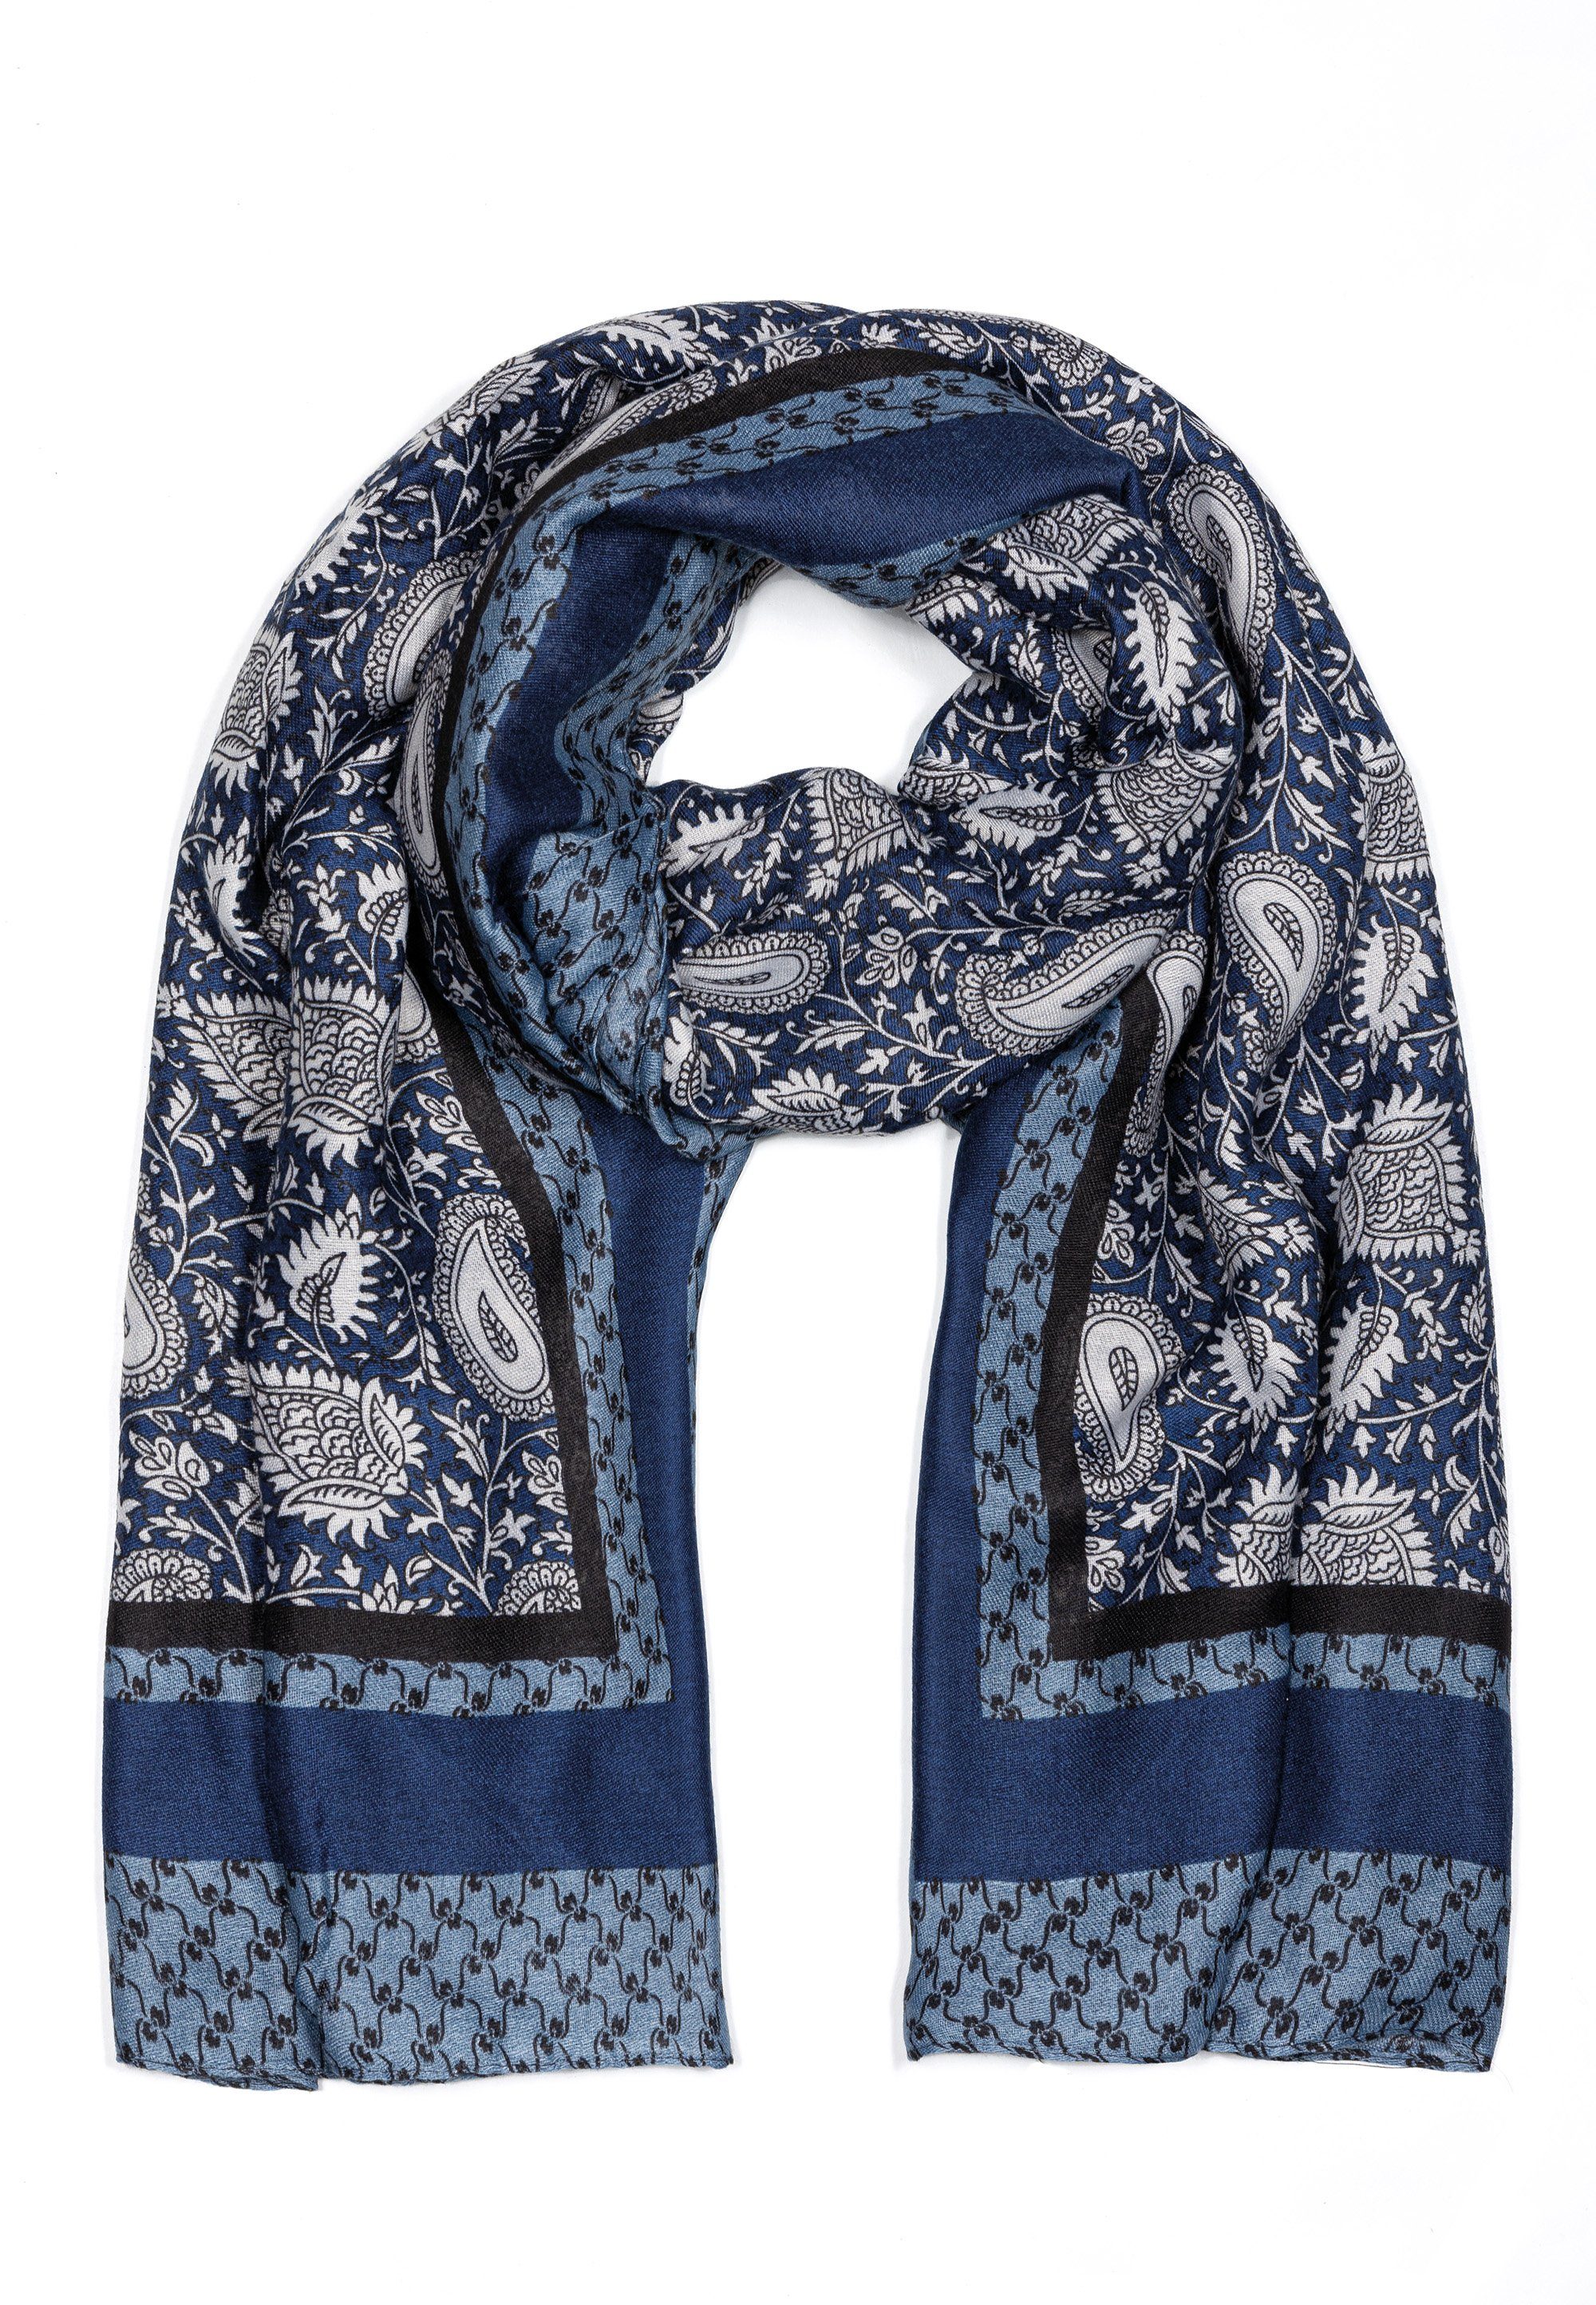 Goodman Design Modeschal Damen Schal im edlen Design, Sehr hochwertiges Material und Verarbeitung Blau | Modeschals